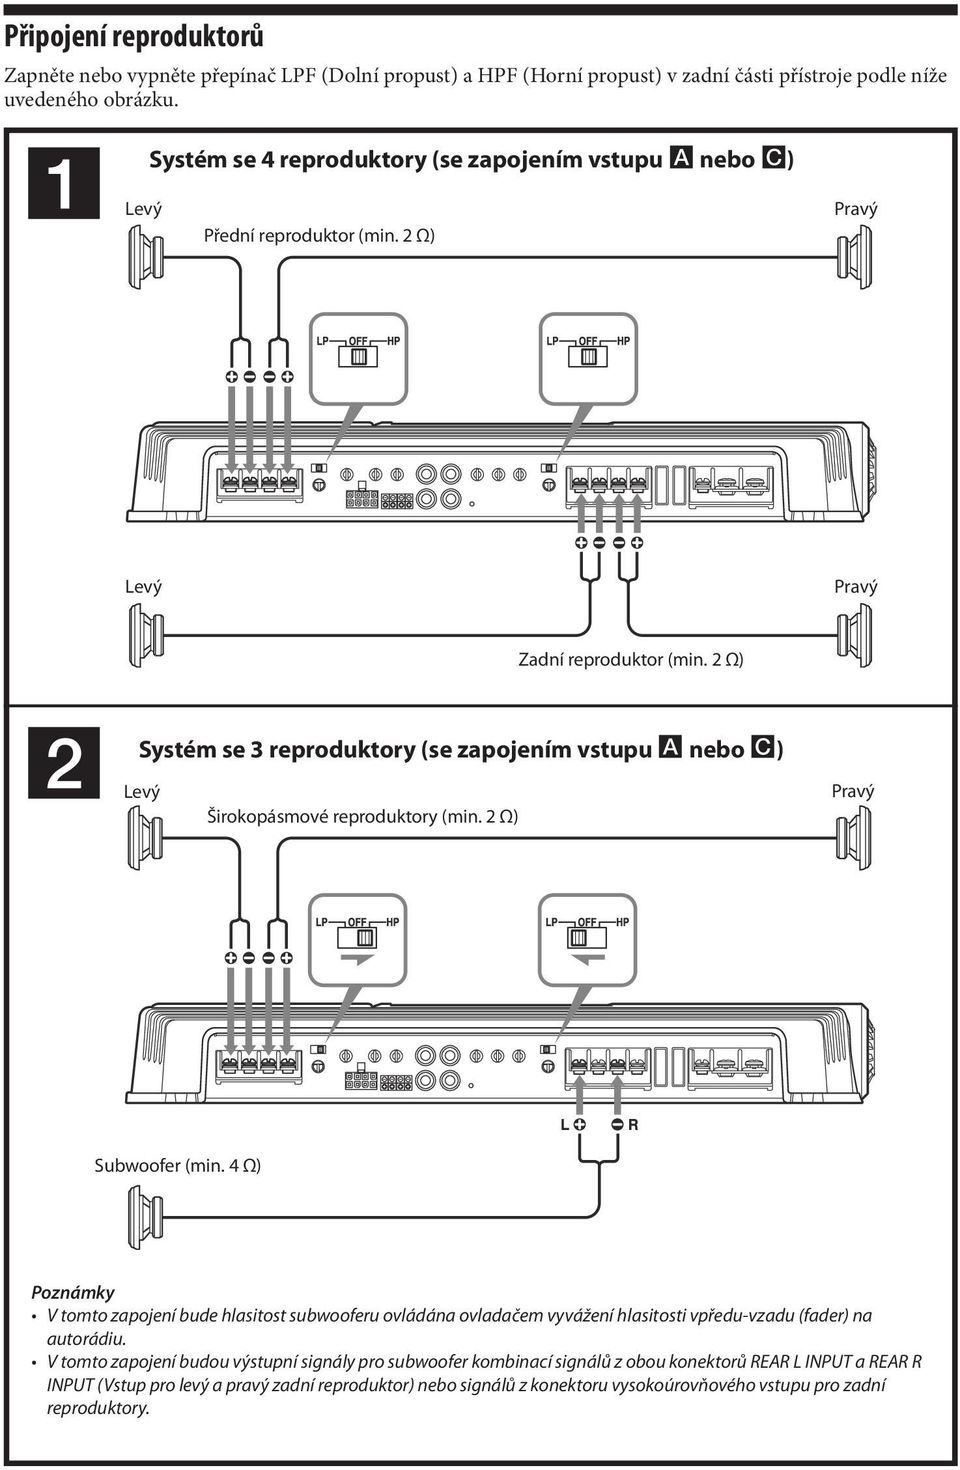 2 Ω) 2 Systém se 3 reproduktory (se zapojením vstupu A nebo C) Širokopásmové reproduktory (min. 2 Ω) Subwoofer (min.